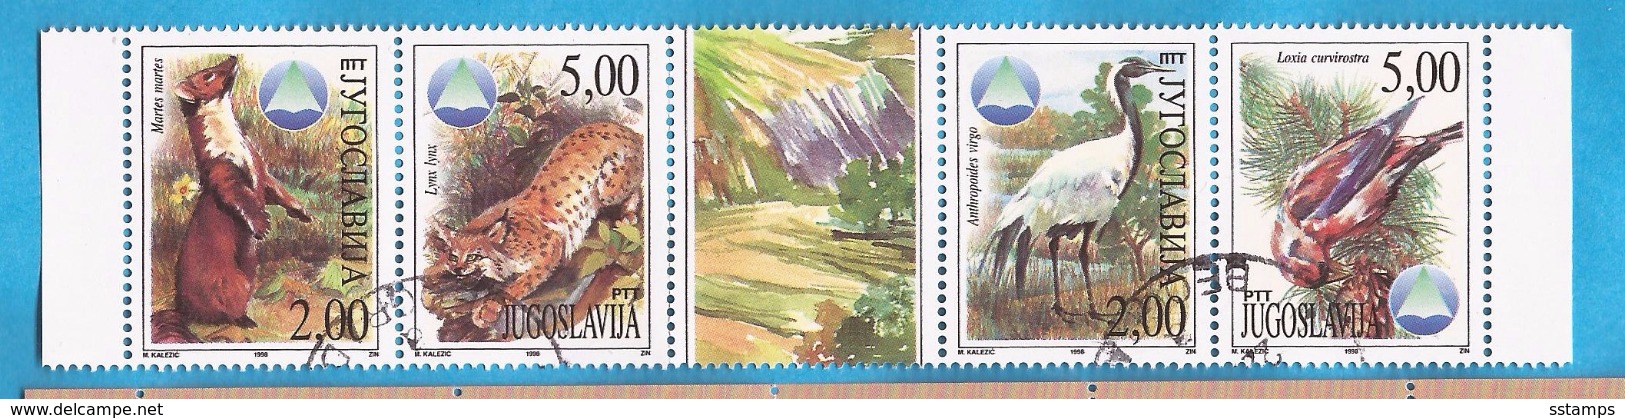 1998  FAUNA WWF  VOEGEL  BIRDS   GESCHUEZTE TIERE JUGOSLAVIJA JUGOSLAWIEN  USED - Gebruikt